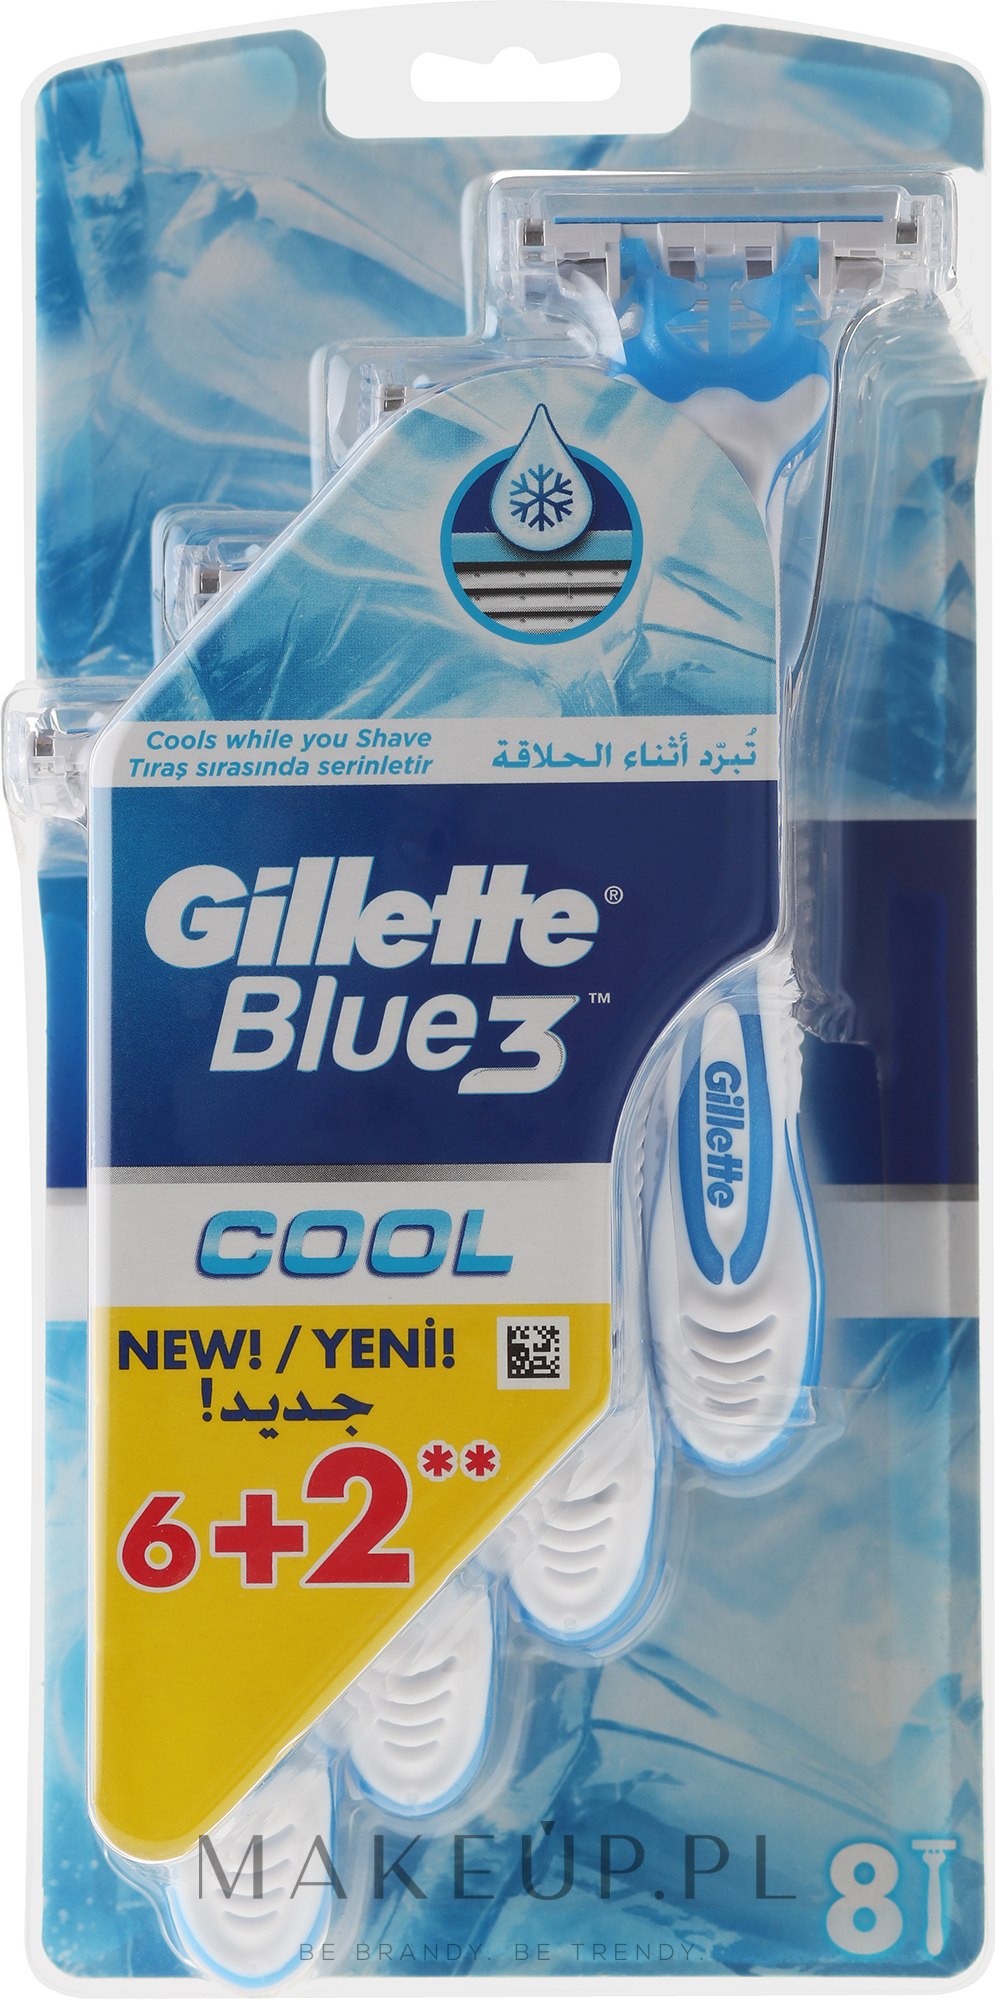 Jednorazowe maszynki do golenia (6 + 2 szt.) - Gillette Blue 3 Cool  — Zdjęcie 8 szt.